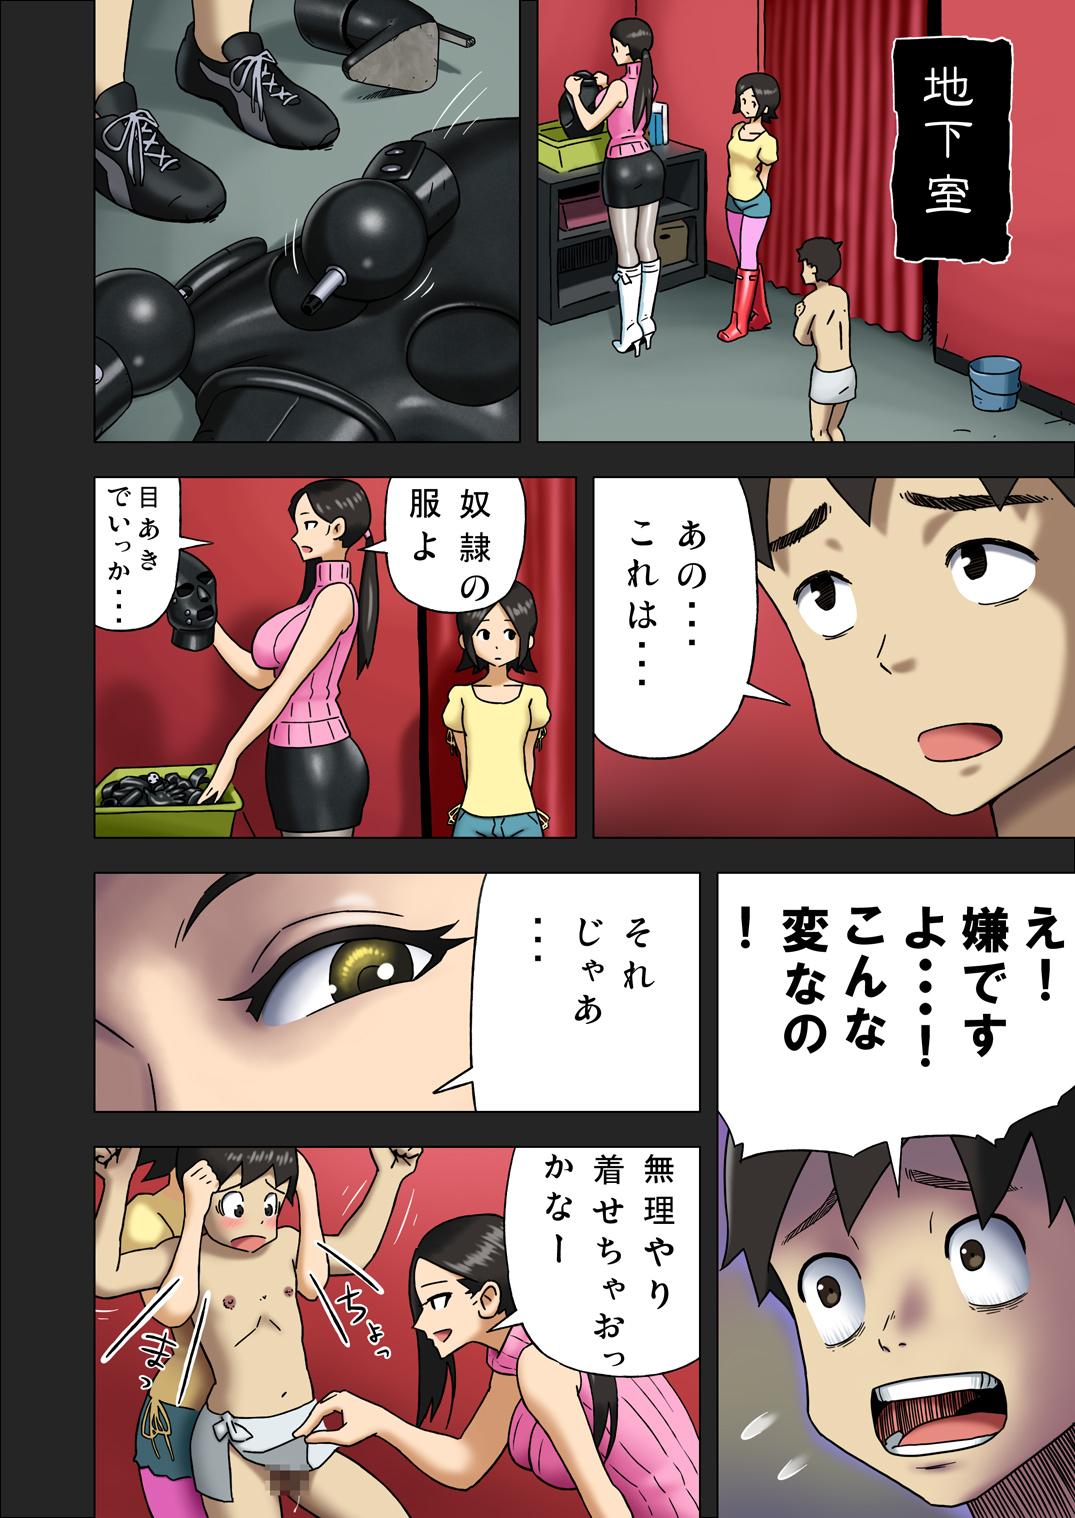 [Enka Boots] Enka Boots no Manga 1 - Juku no Sensei ga Joou-sama V2.0 11